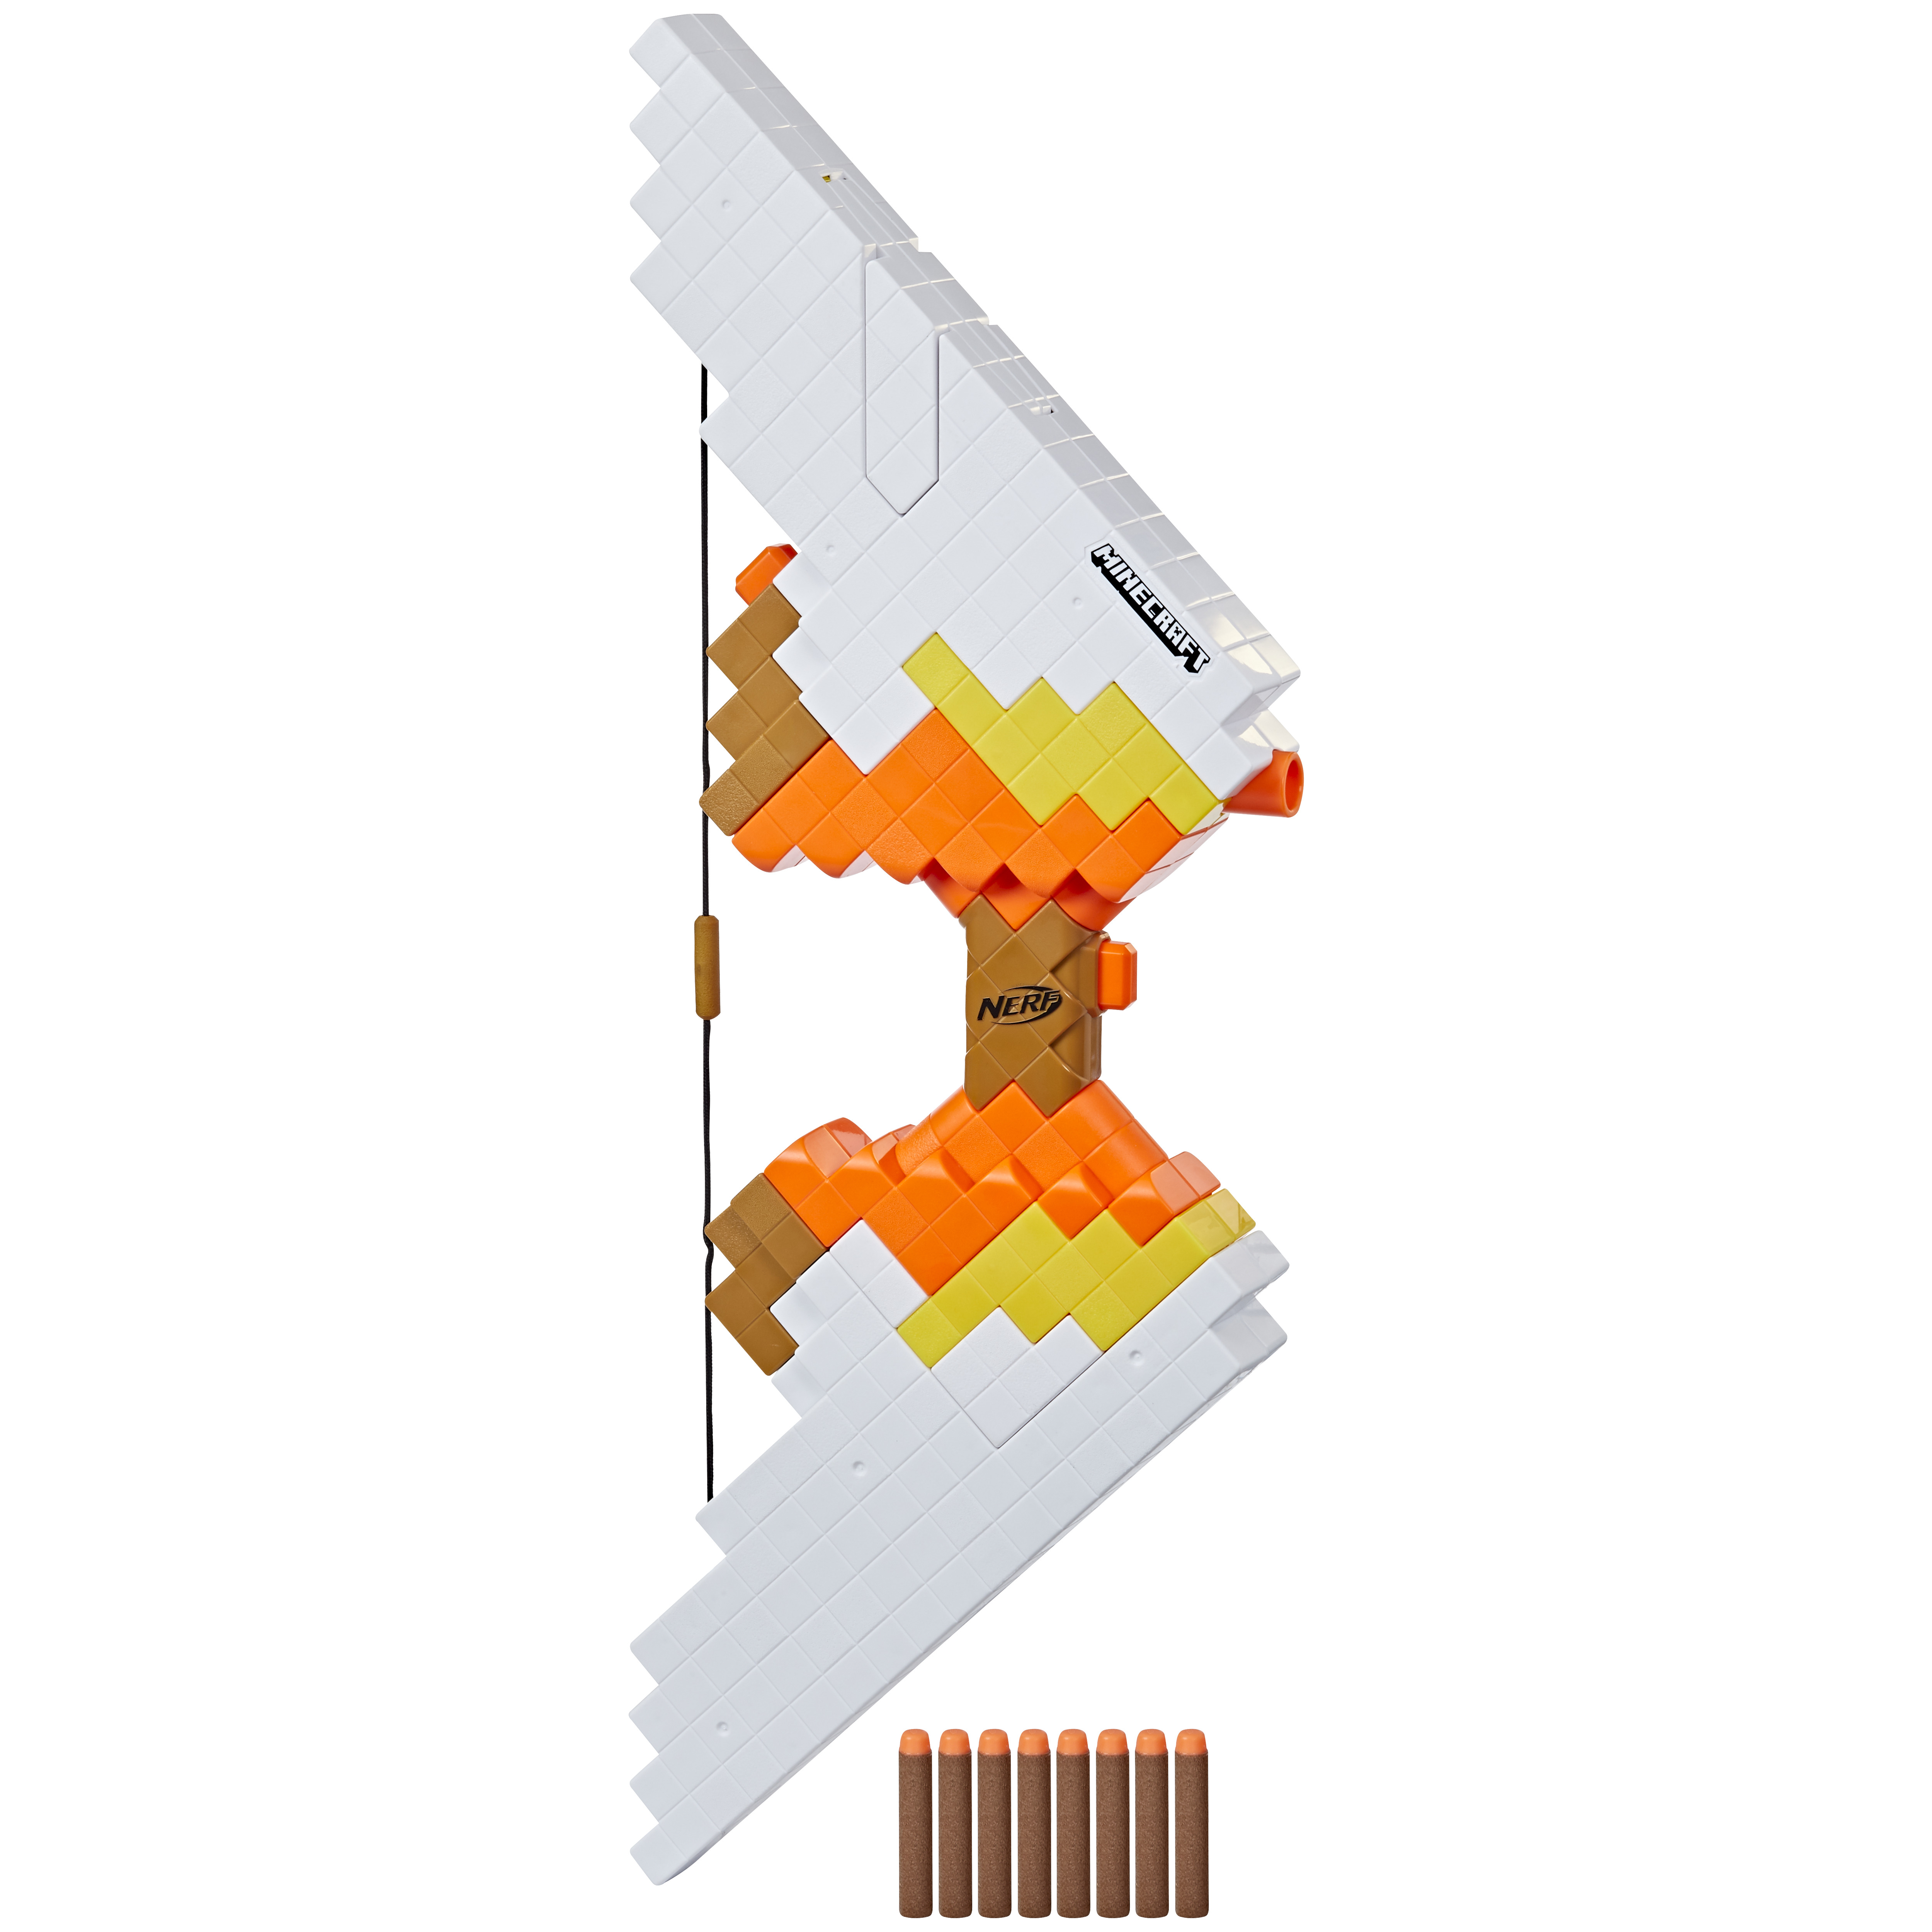 Image of Nerf Minecraft - Sabrewing, arco motorizzato lancia i dardi, design ispirato al videogioco, include 8 dardi Elite